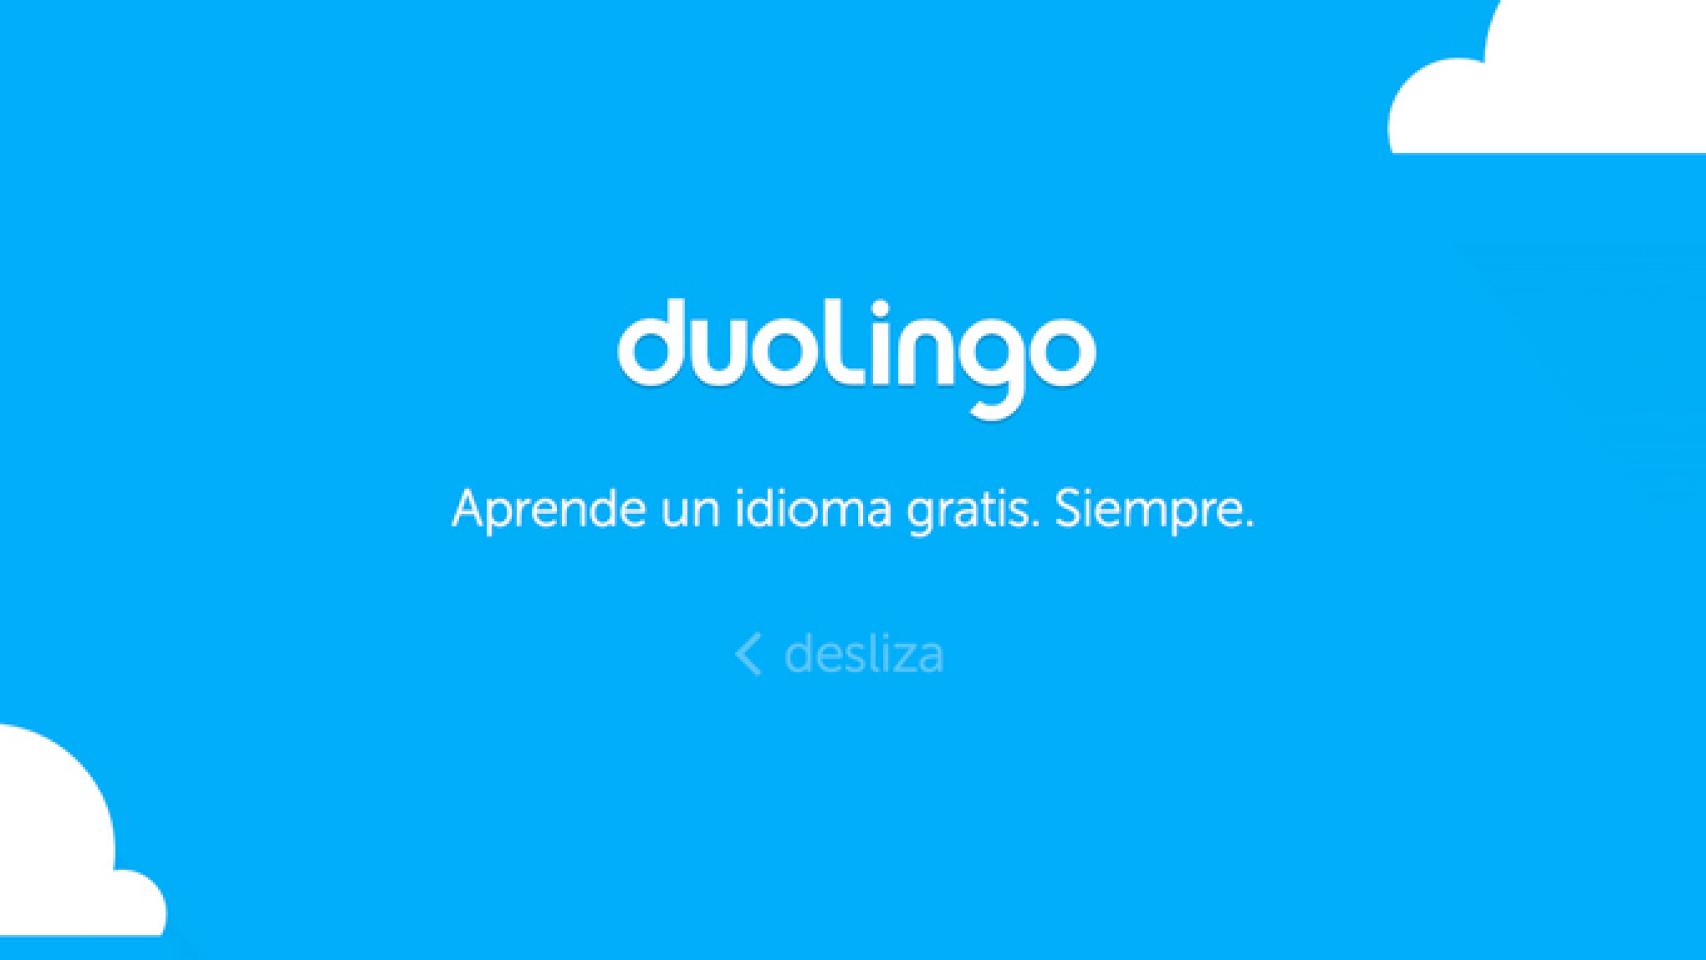 Duolingo 2.0 actualizado con una renovada interfaz. Aprende idiomas con estilo